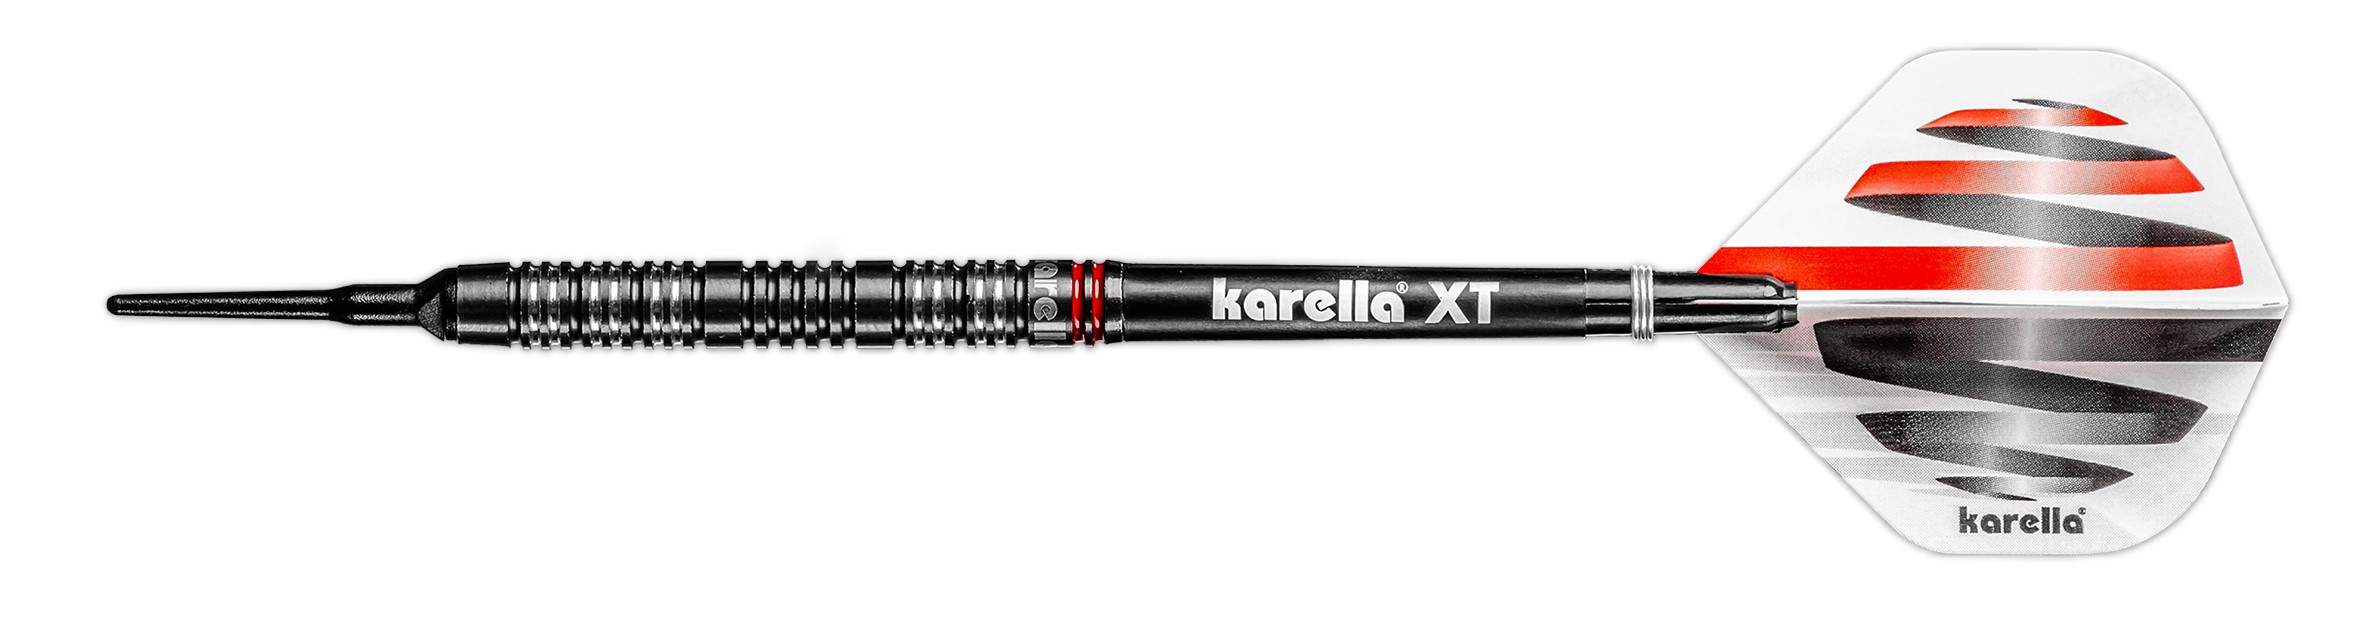 Softdart Karella HiPower 18g schwarz 90% Tungsten